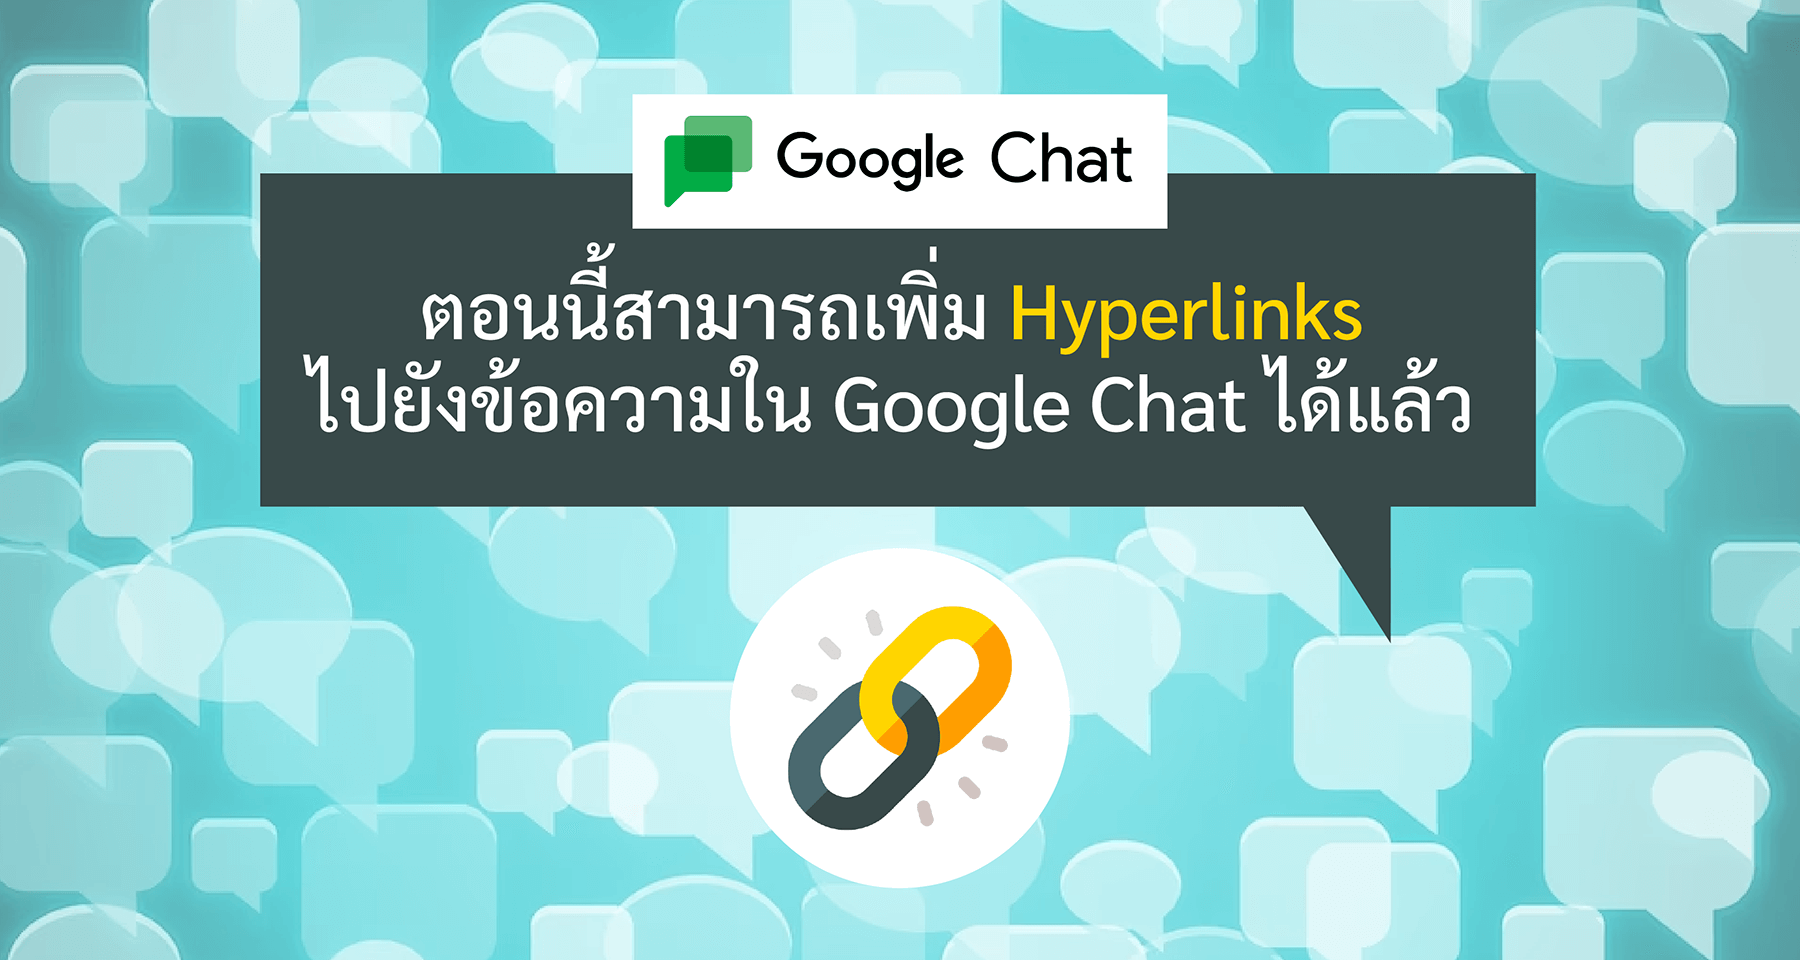 ตอนนี้สามารถเพิ่ม Hyperlinks ไปยังข้อความใน Google Chat ได้แล้ว